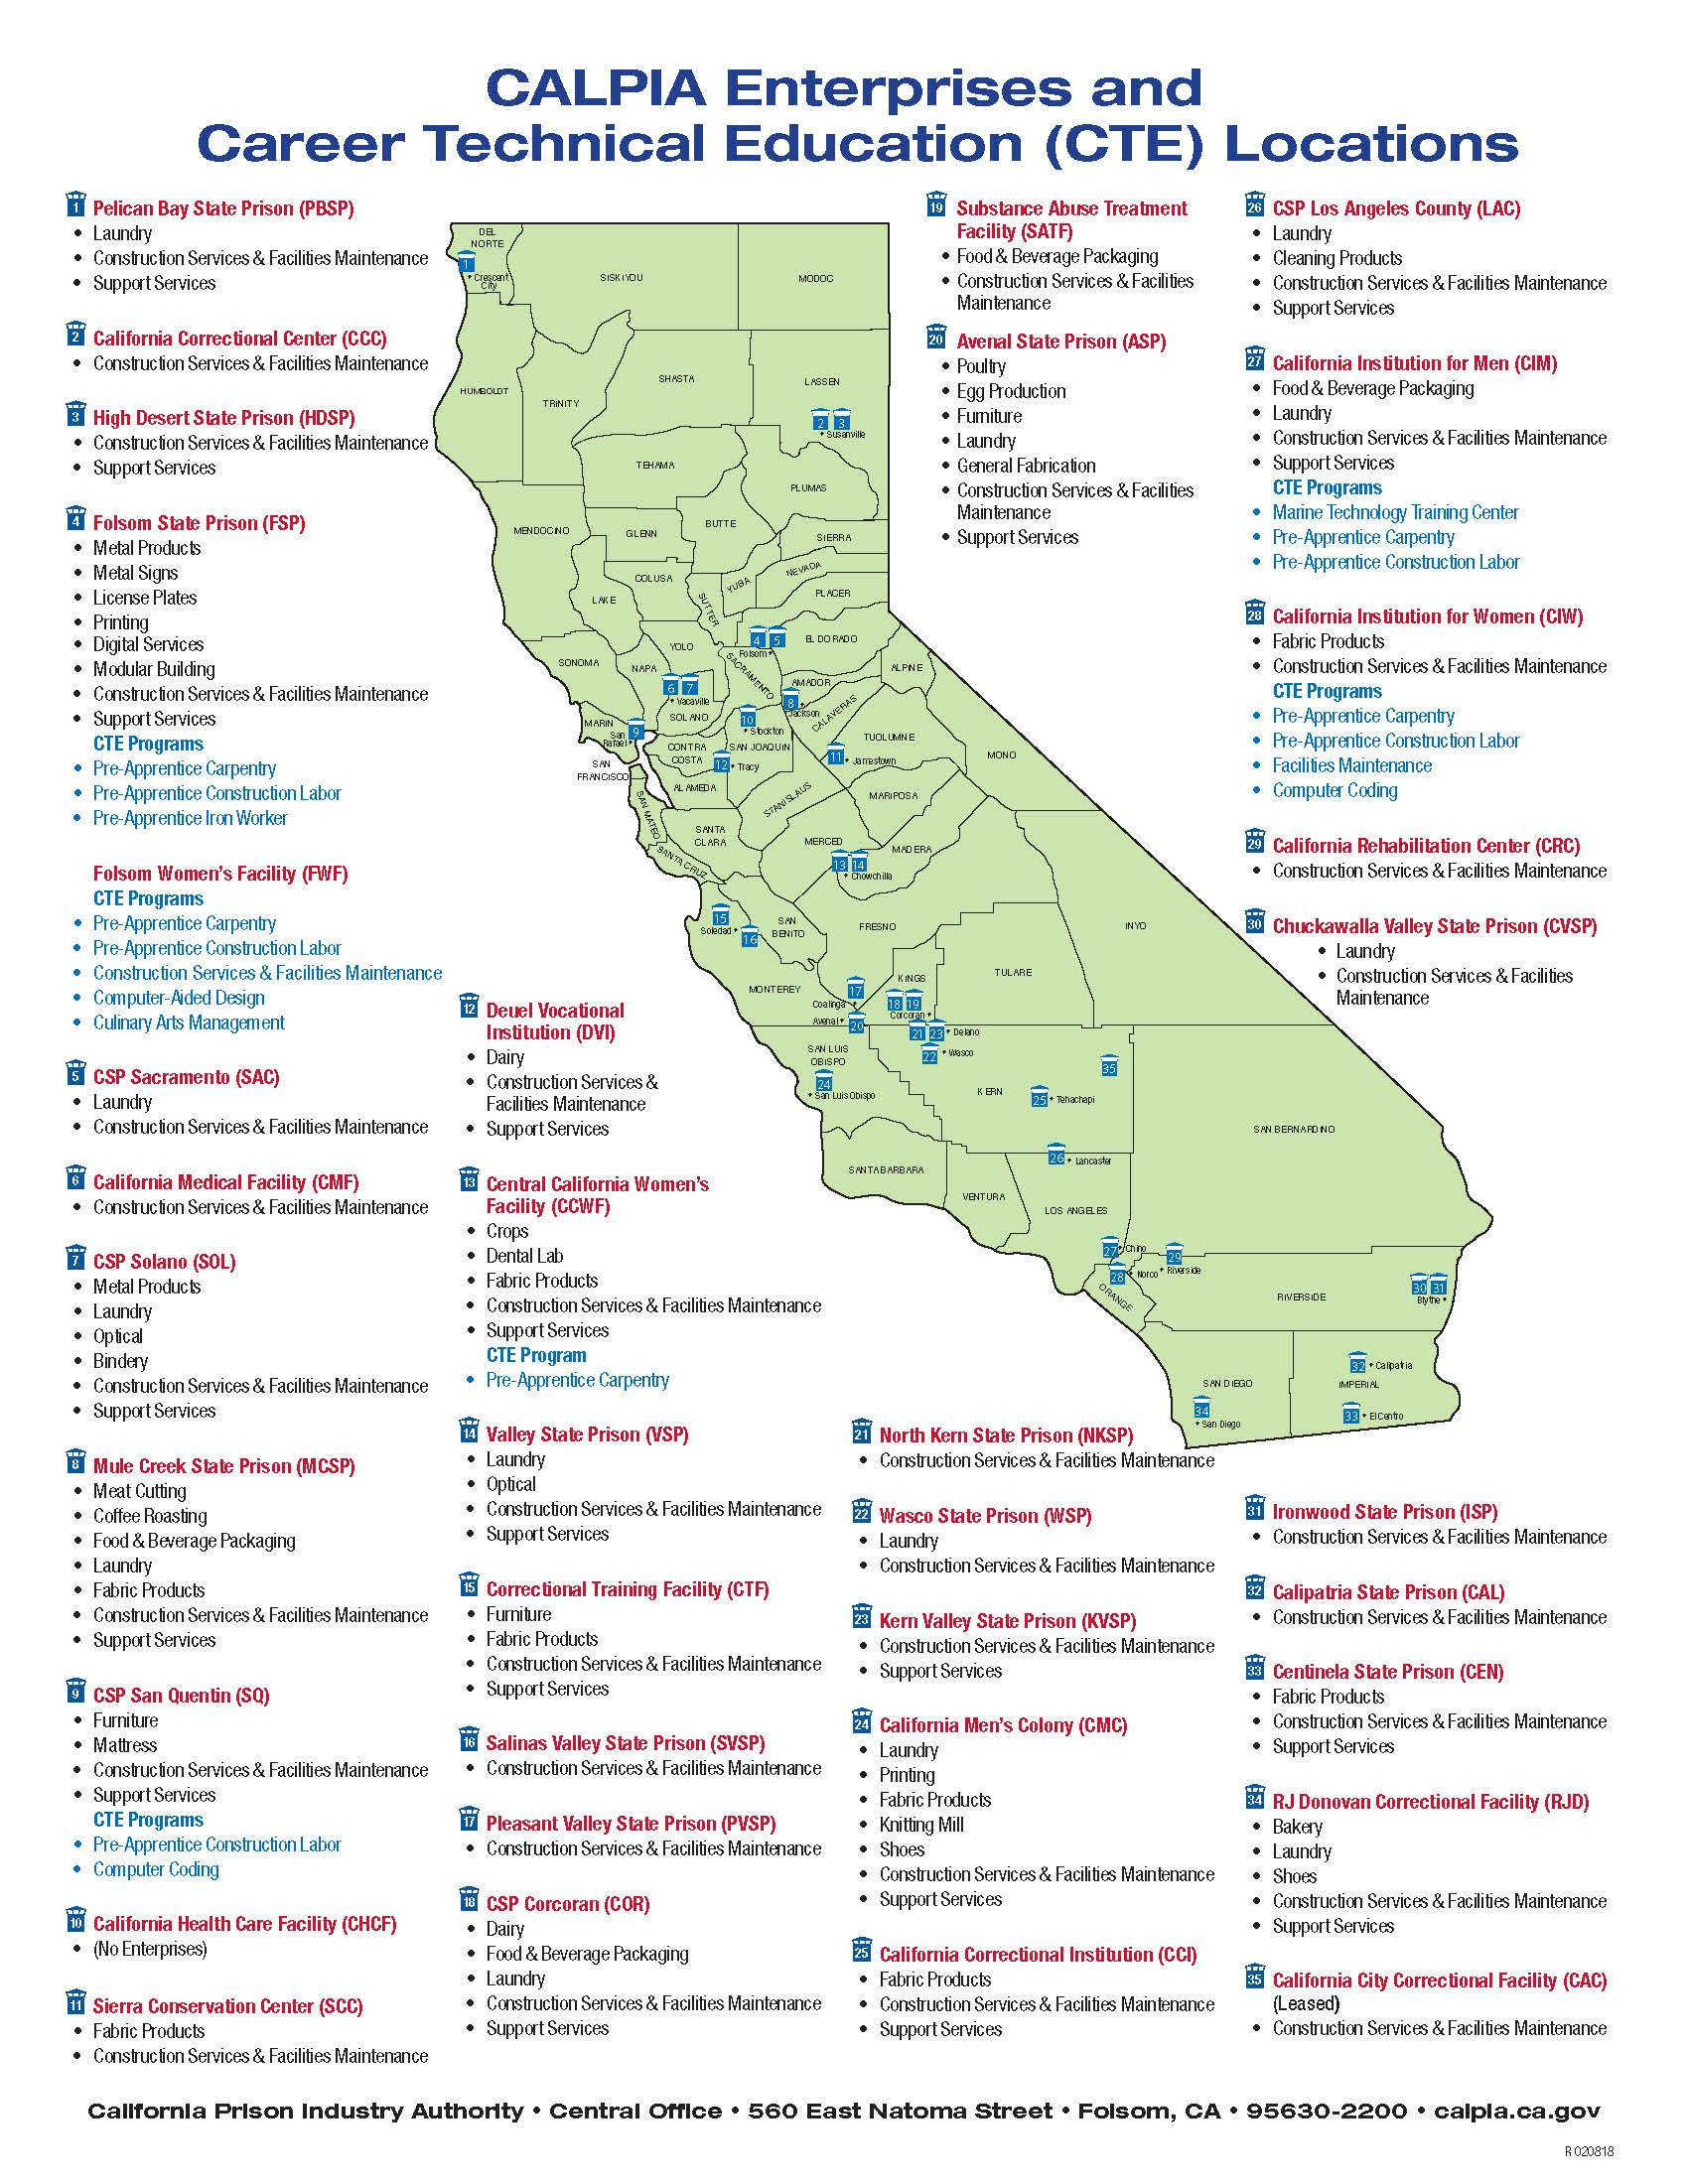 Cdcr Prison Map Fresh California State Prison Locations Map Simple - California Prisons Map